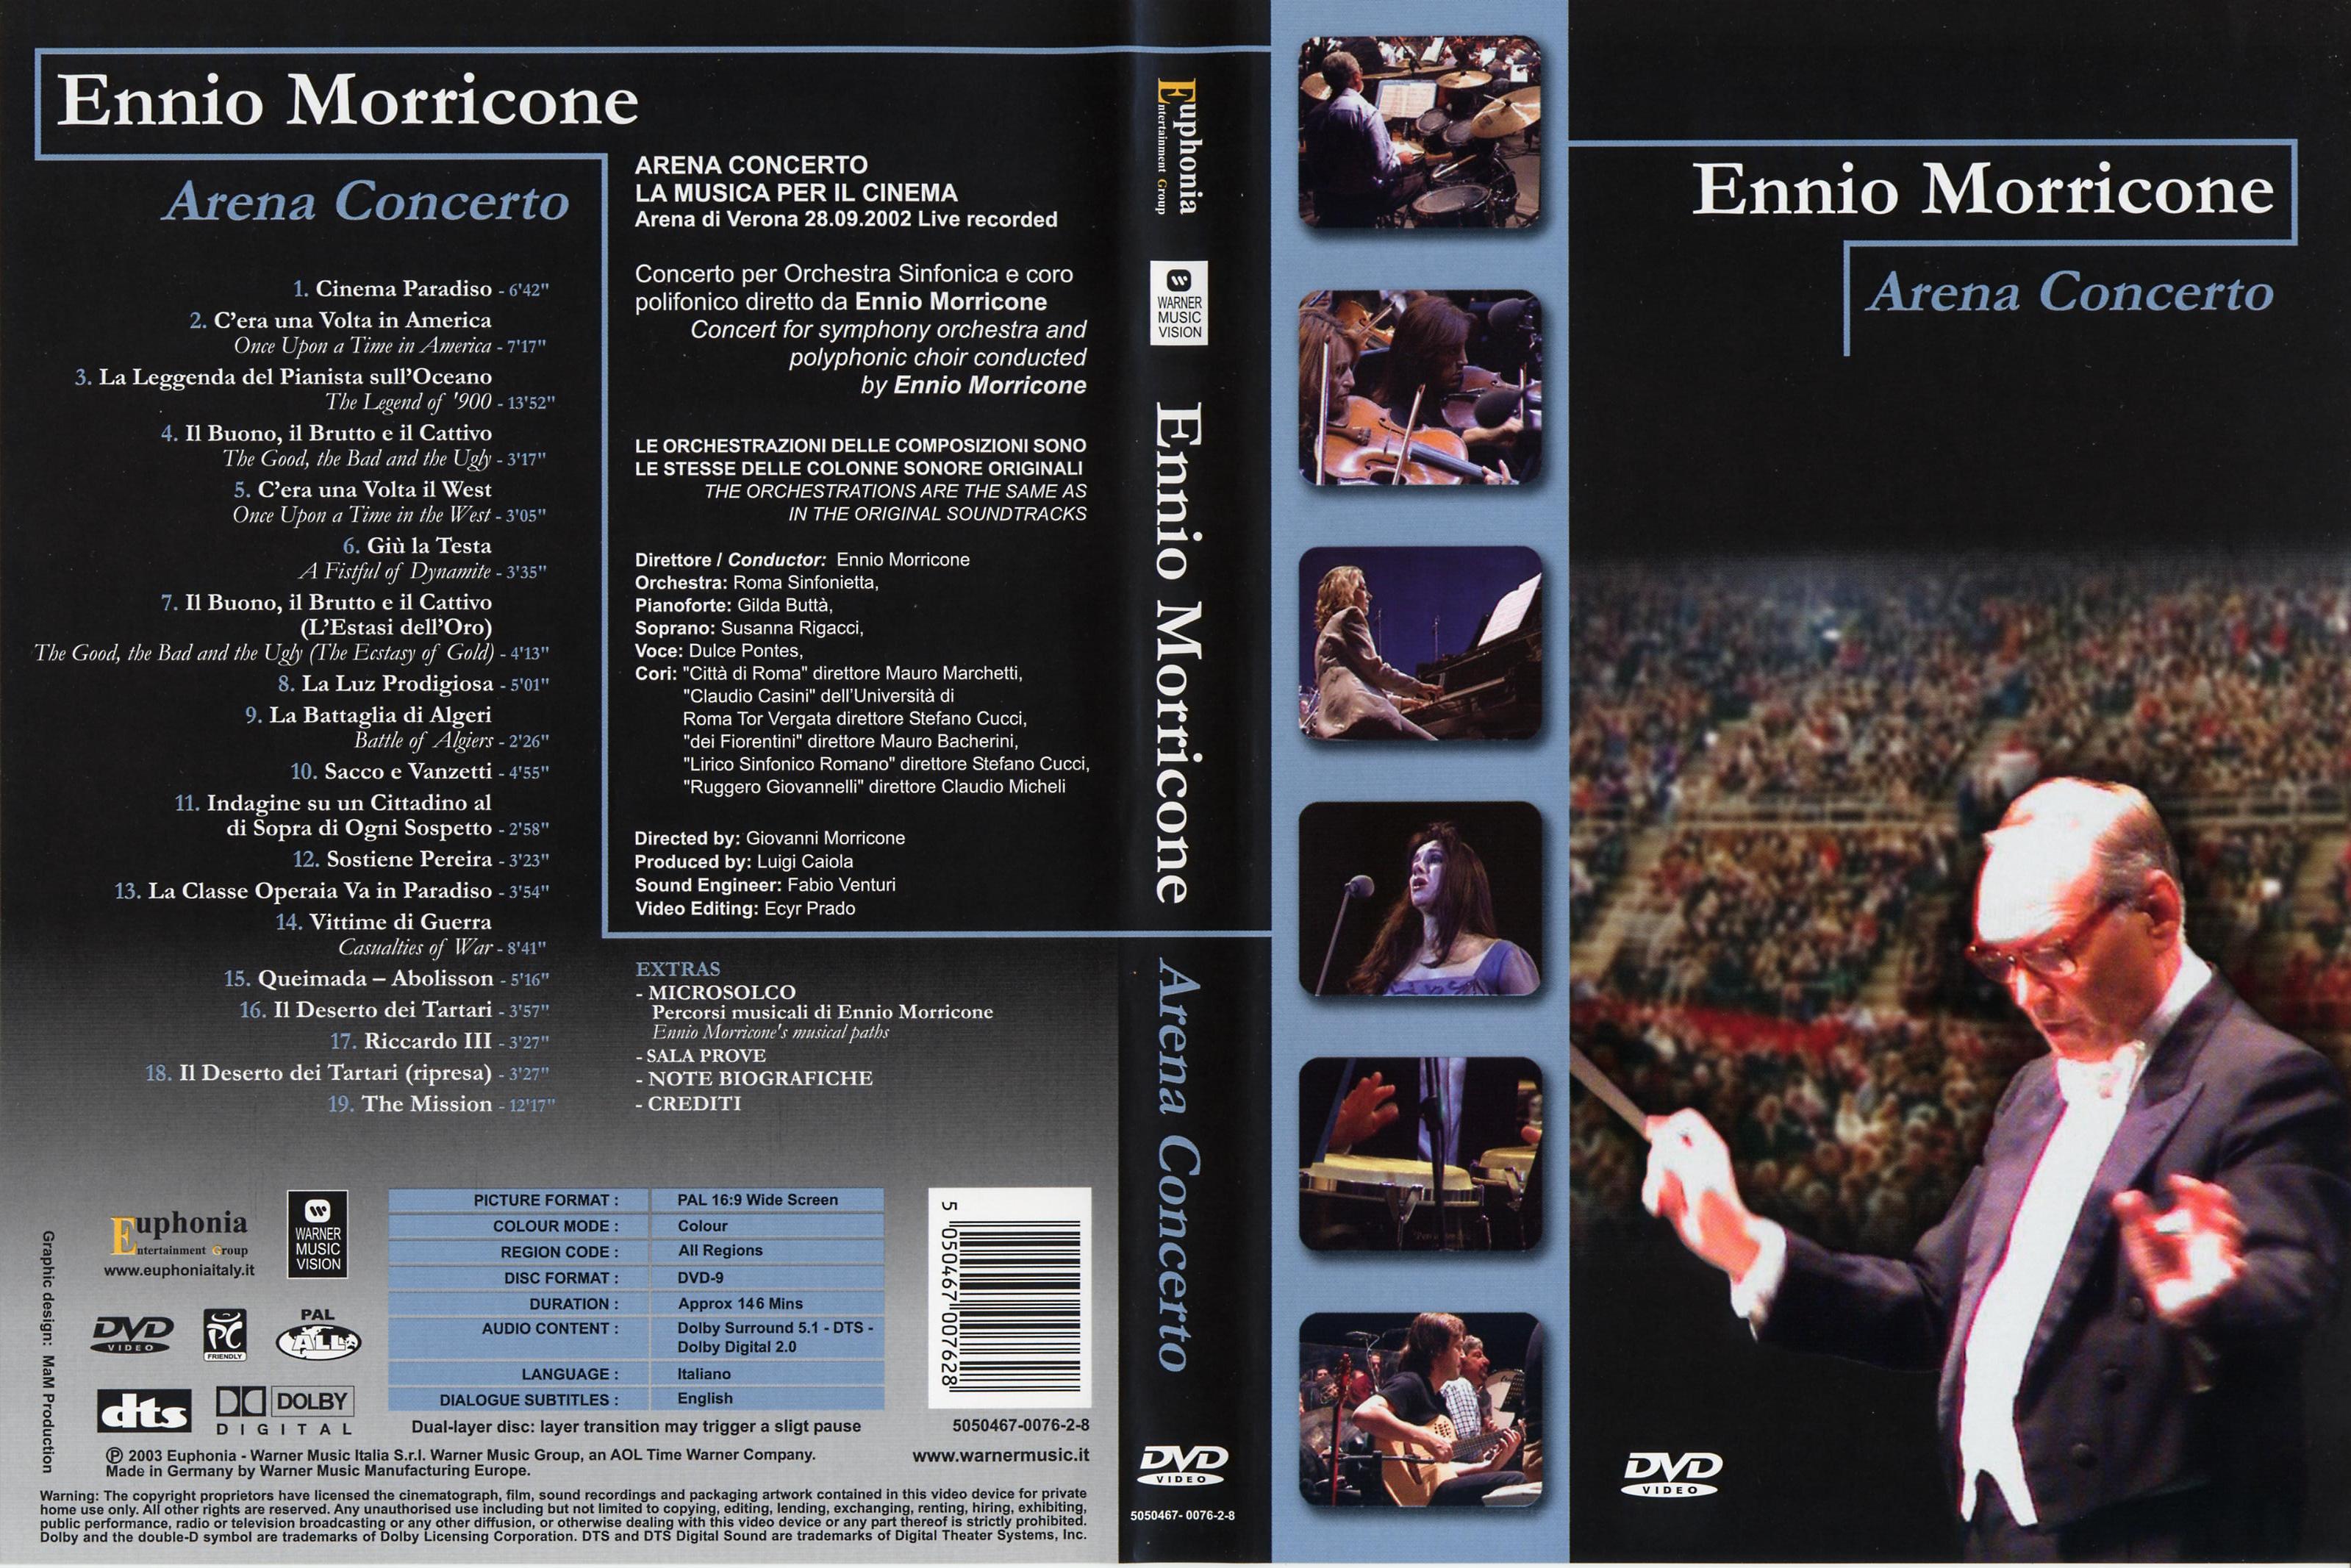 Jaquette DVD Ennio Morricone Arena Concerto